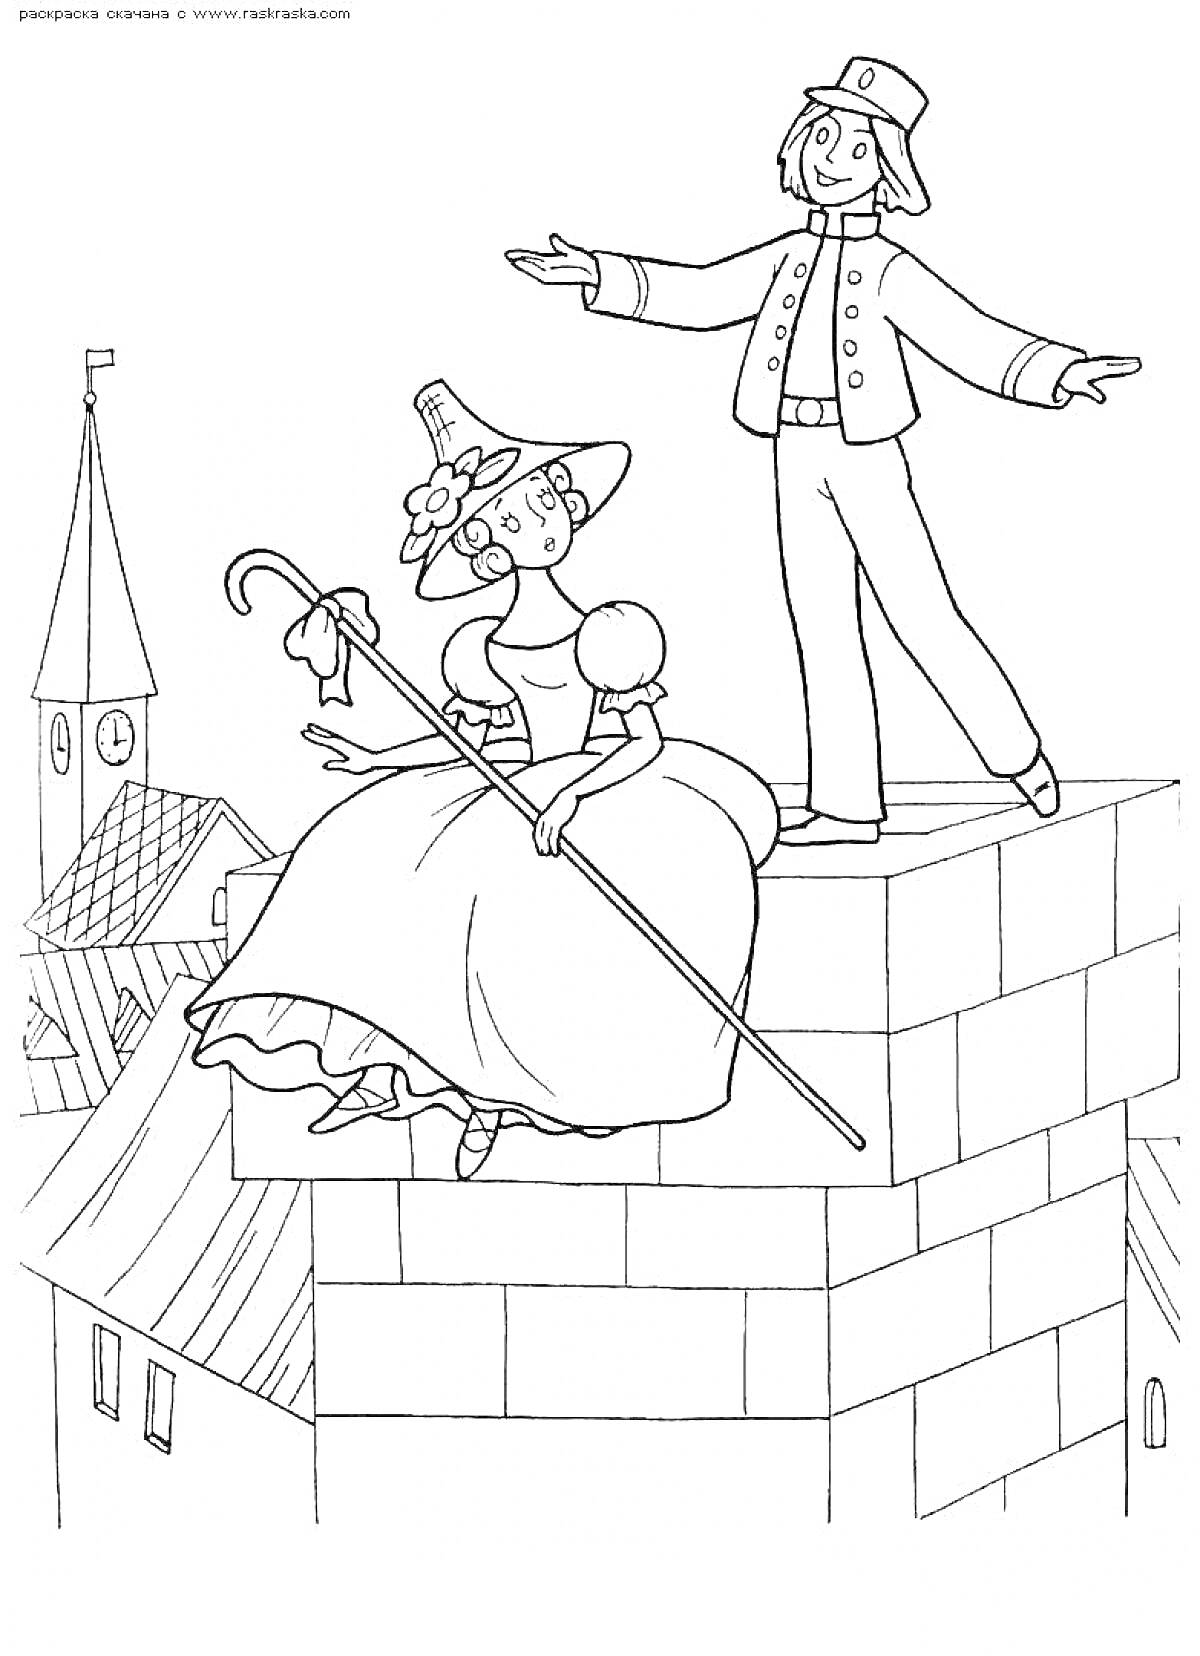 Раскраска Девушка в шляпе и пастушьим посохом сидит на стене рядом с молодым человеком в фуражке на фоне крыши зданий и часовни